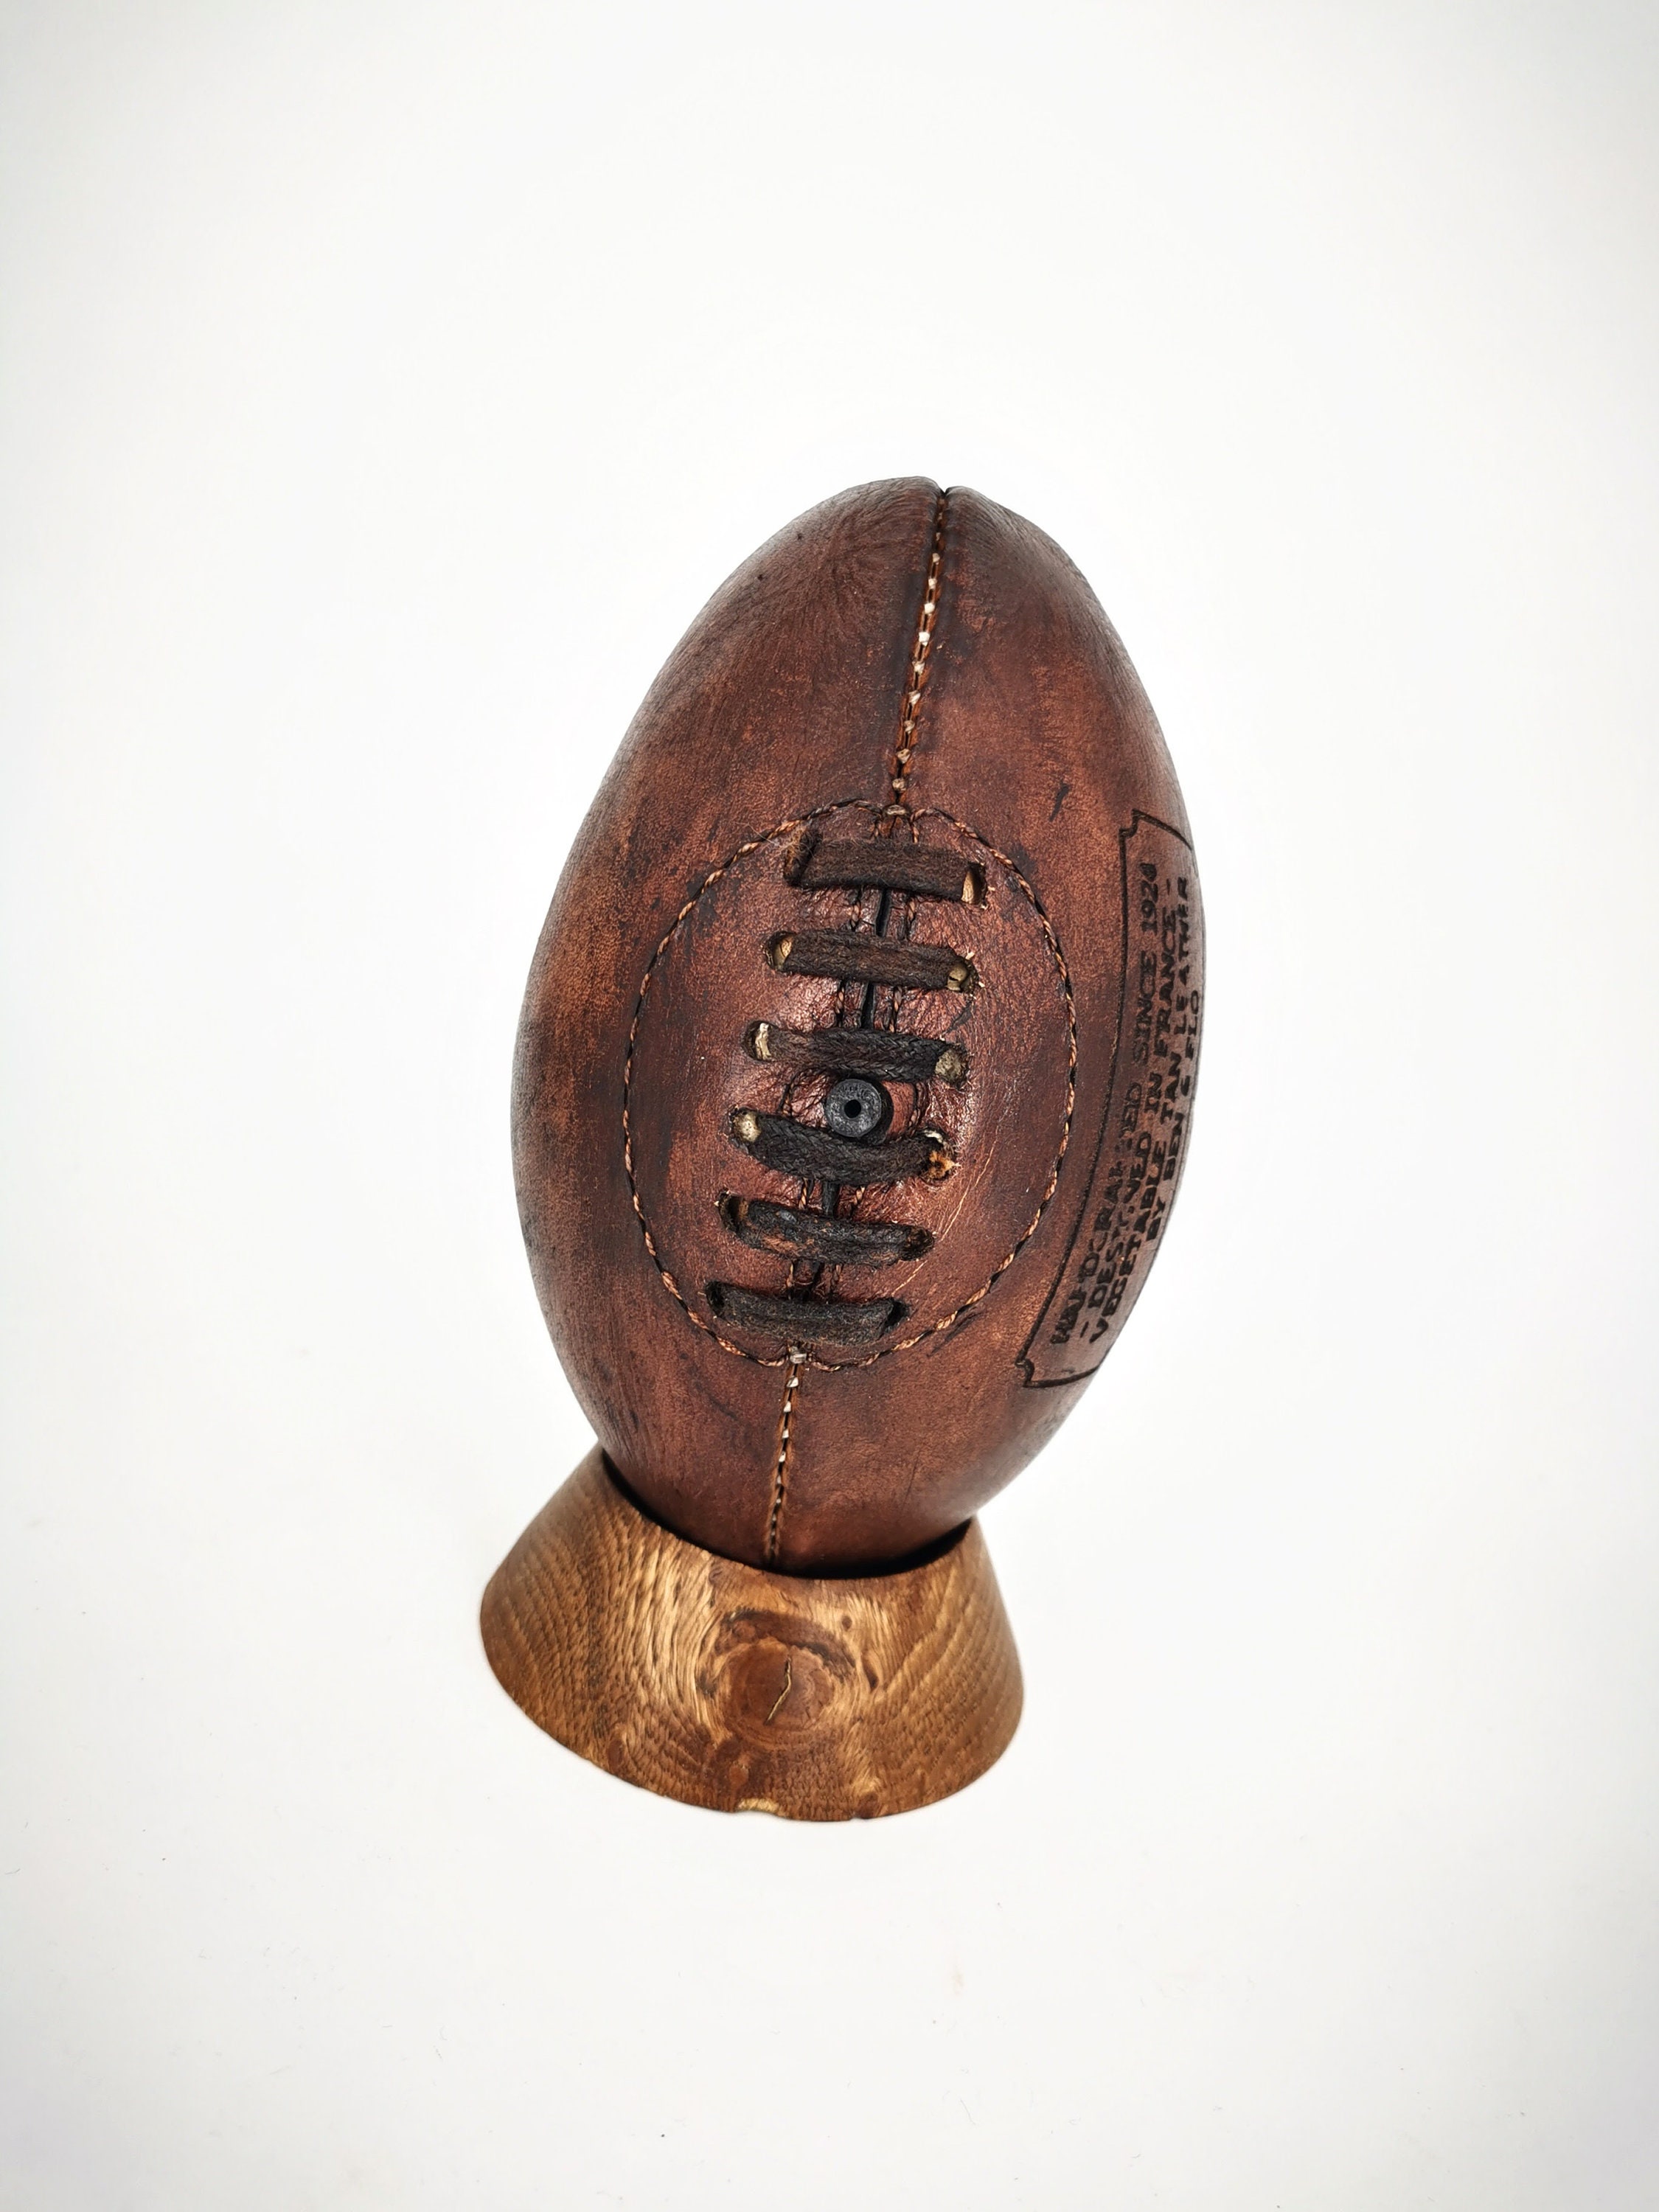 Ballon de rugby vintage collector cuir marron - Ben & Flo